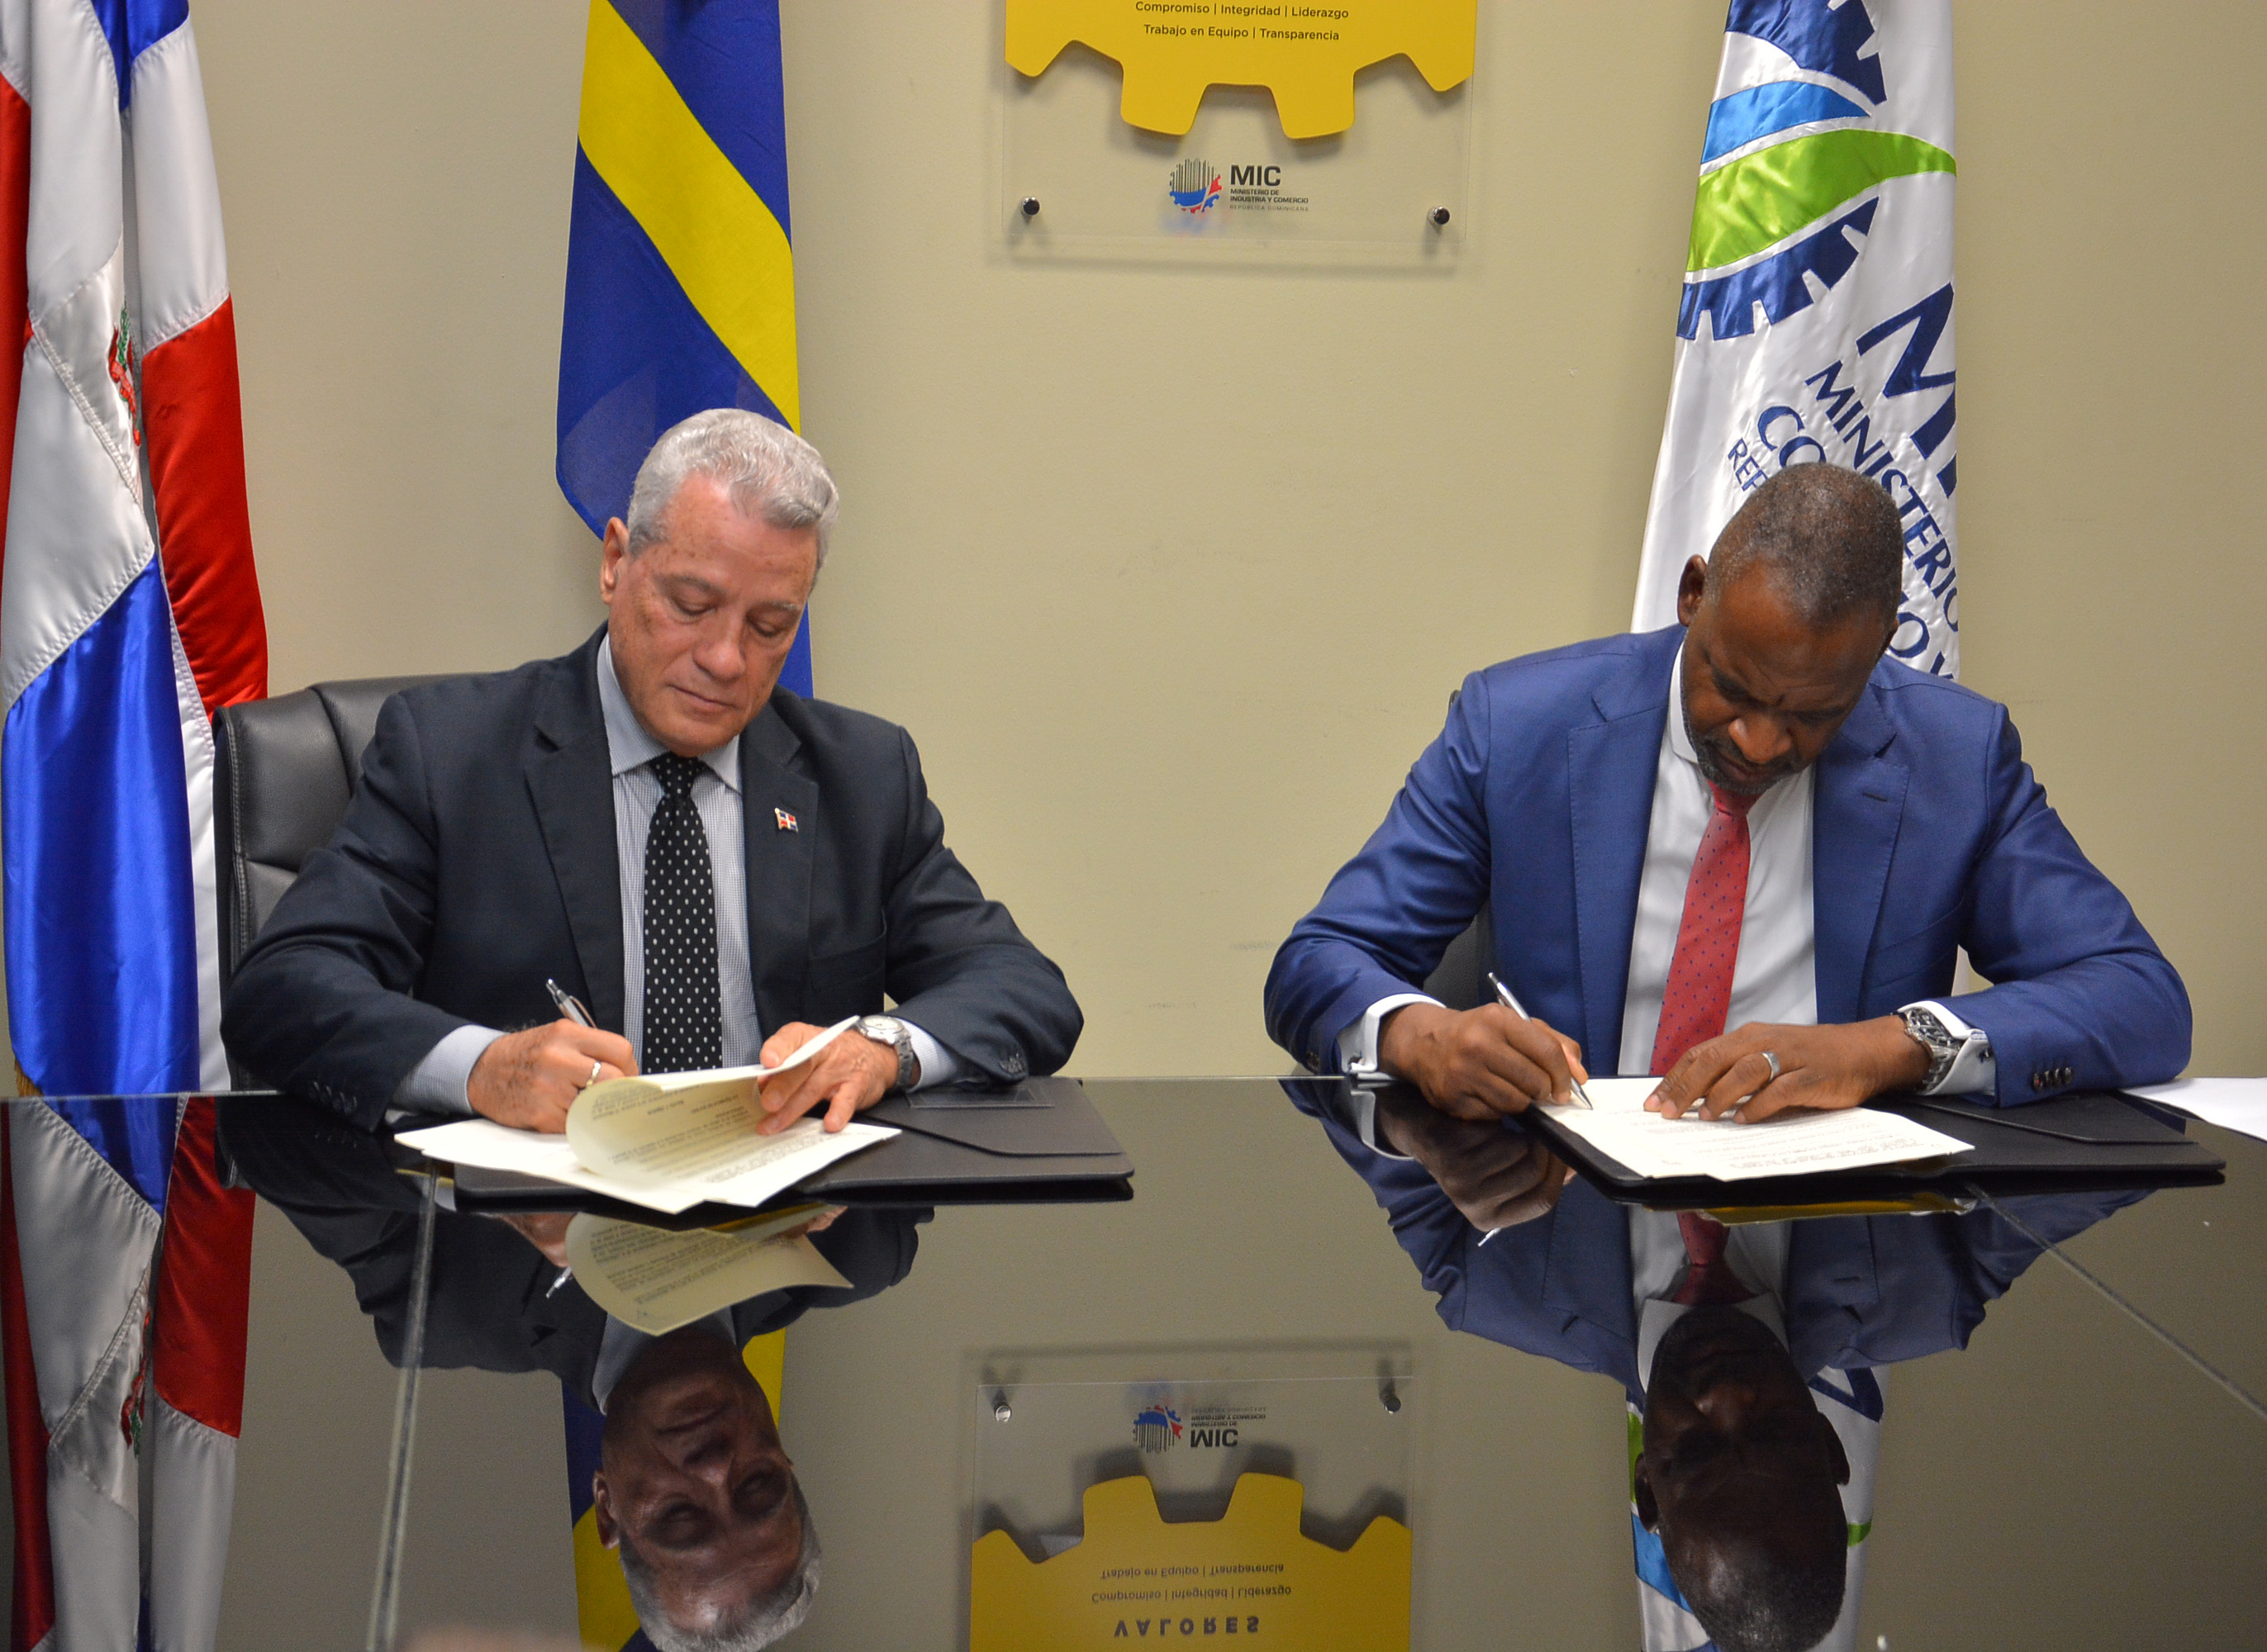  RD y Curazao firman acuerdo facilitará exportaciones bilaterales de bienes y servicios a través de Mipymes